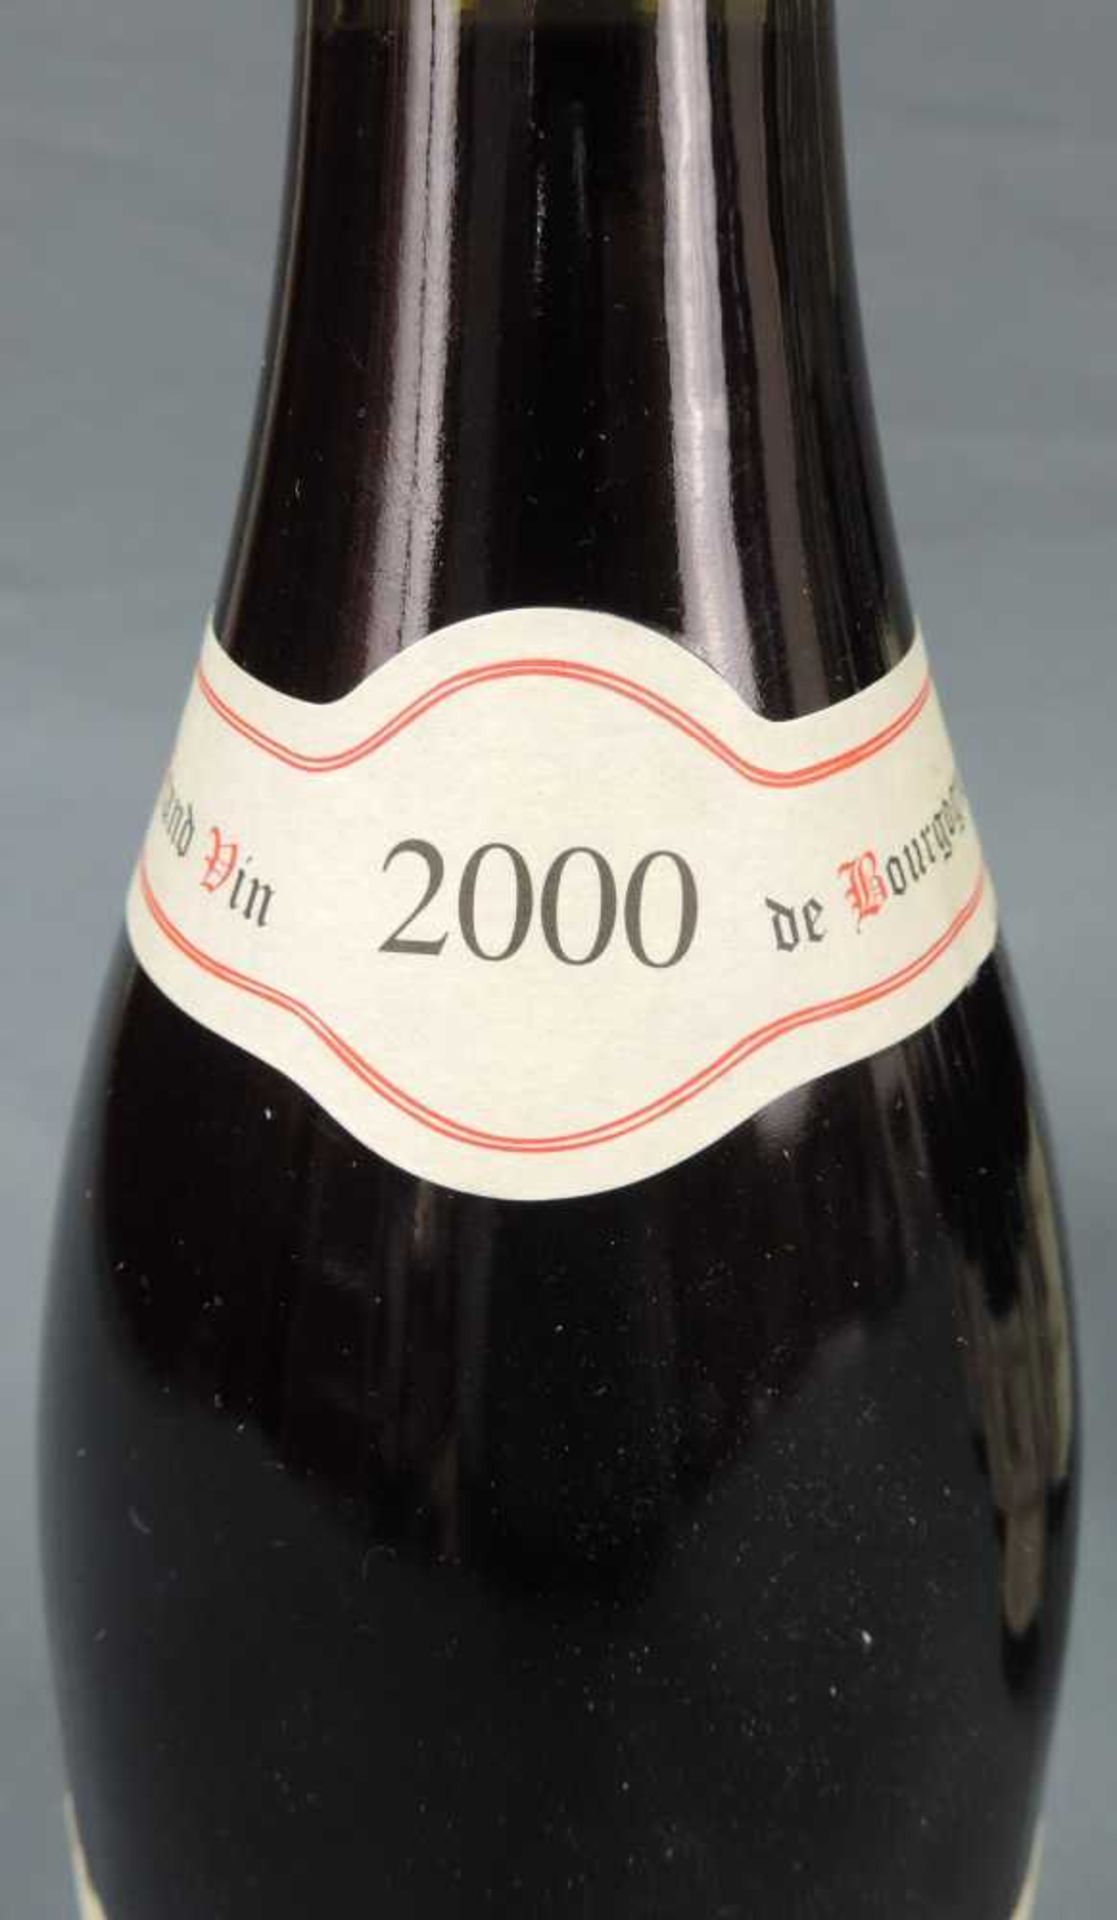 2000 Domaine Prieur - Brunet, Satenay Comme Premier Cru, France. 8 Flaschen, 750 ml, Alc., 13,5% - Image 4 of 6